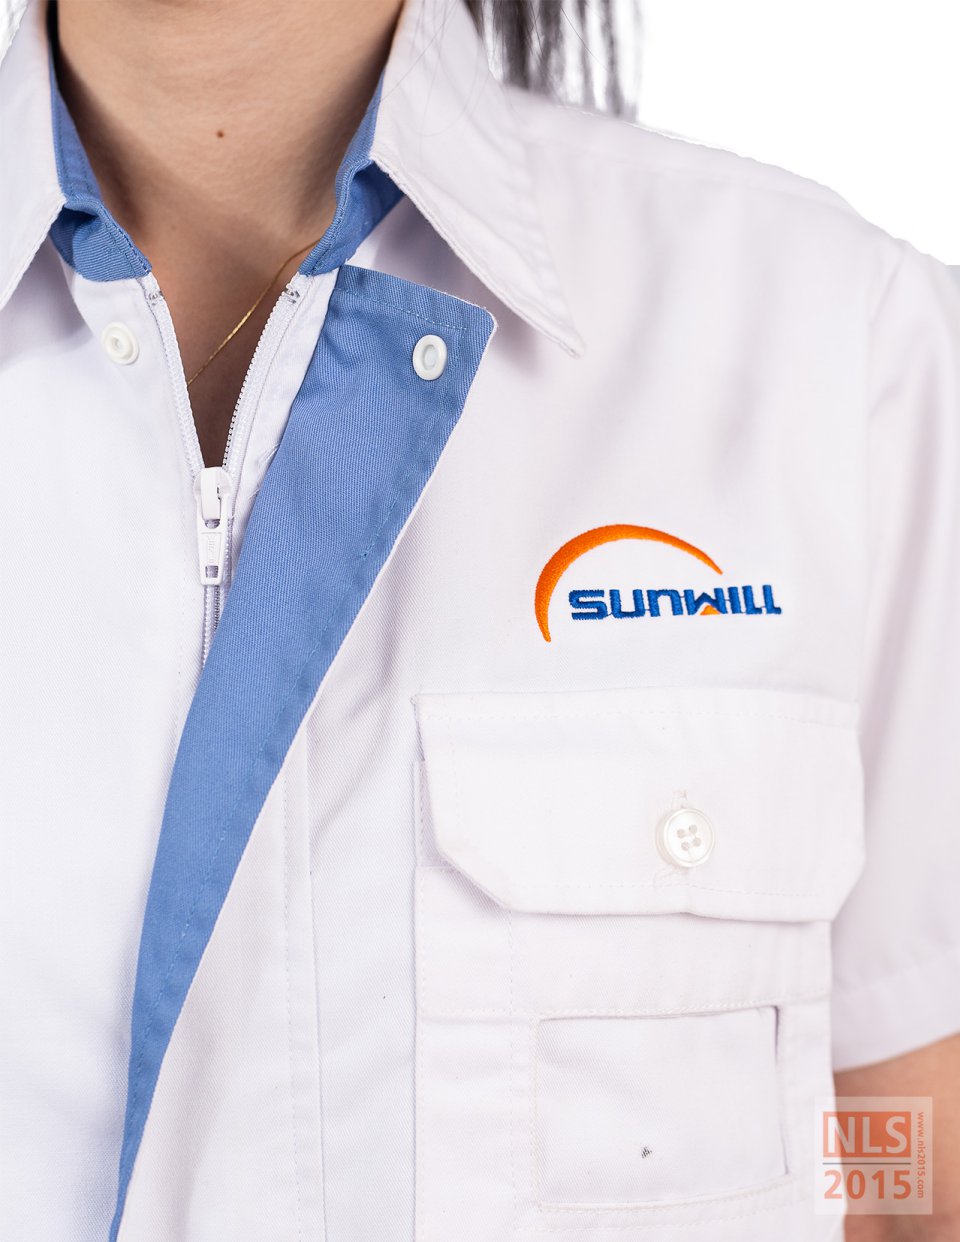 ตัวอย่างชุดยูนิฟอร์มพนักงาน บริษัท Sunwill / นลินสิริรับตัดชุดยูนิฟอร์มพนักงานรูปที่ 